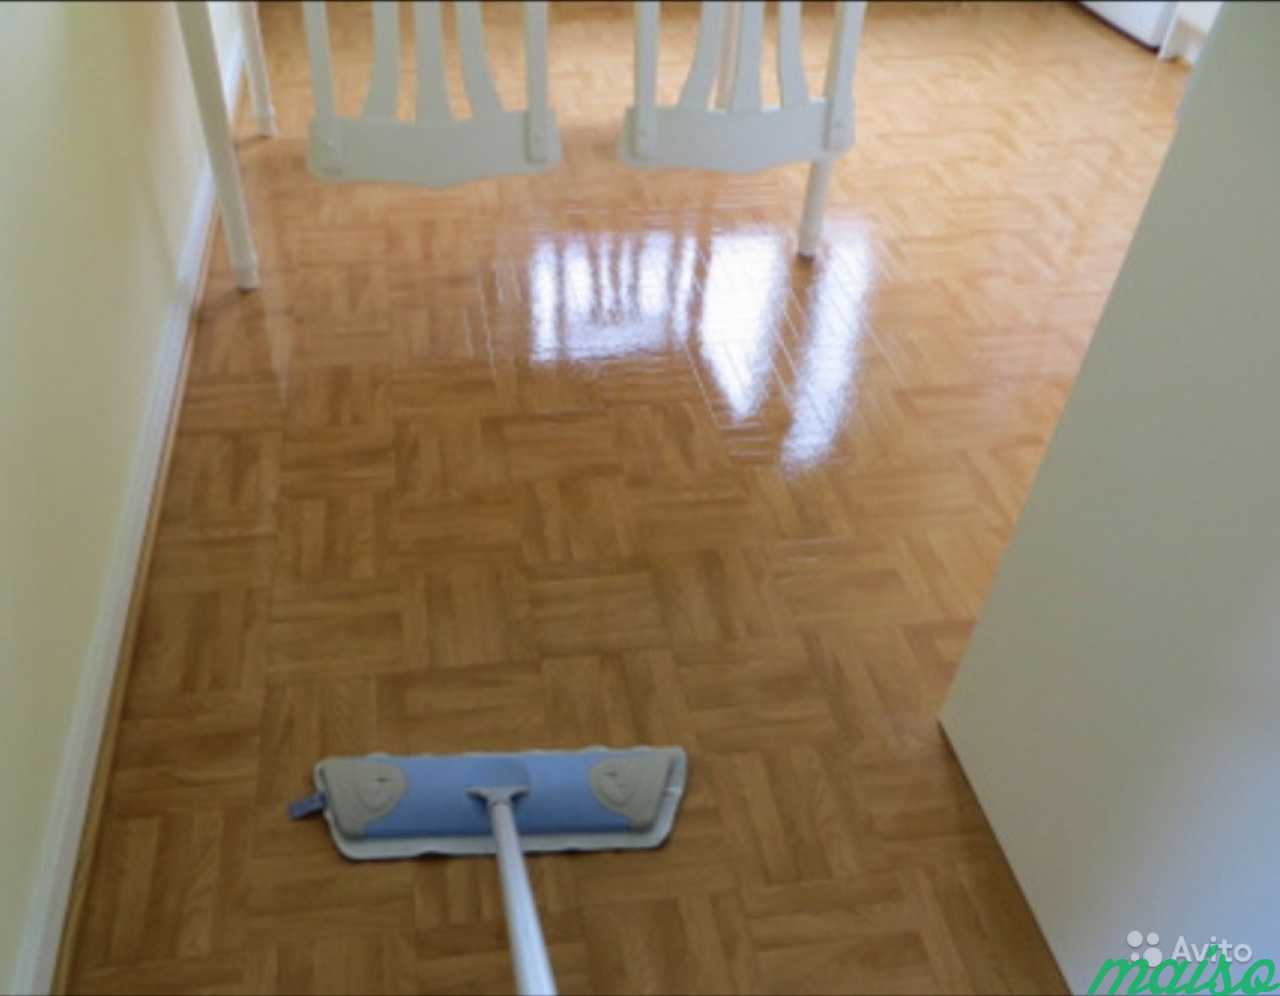 Уборка до идеальной чистоты в вашей квартире, доме в Санкт-Петербурге. Фото 7